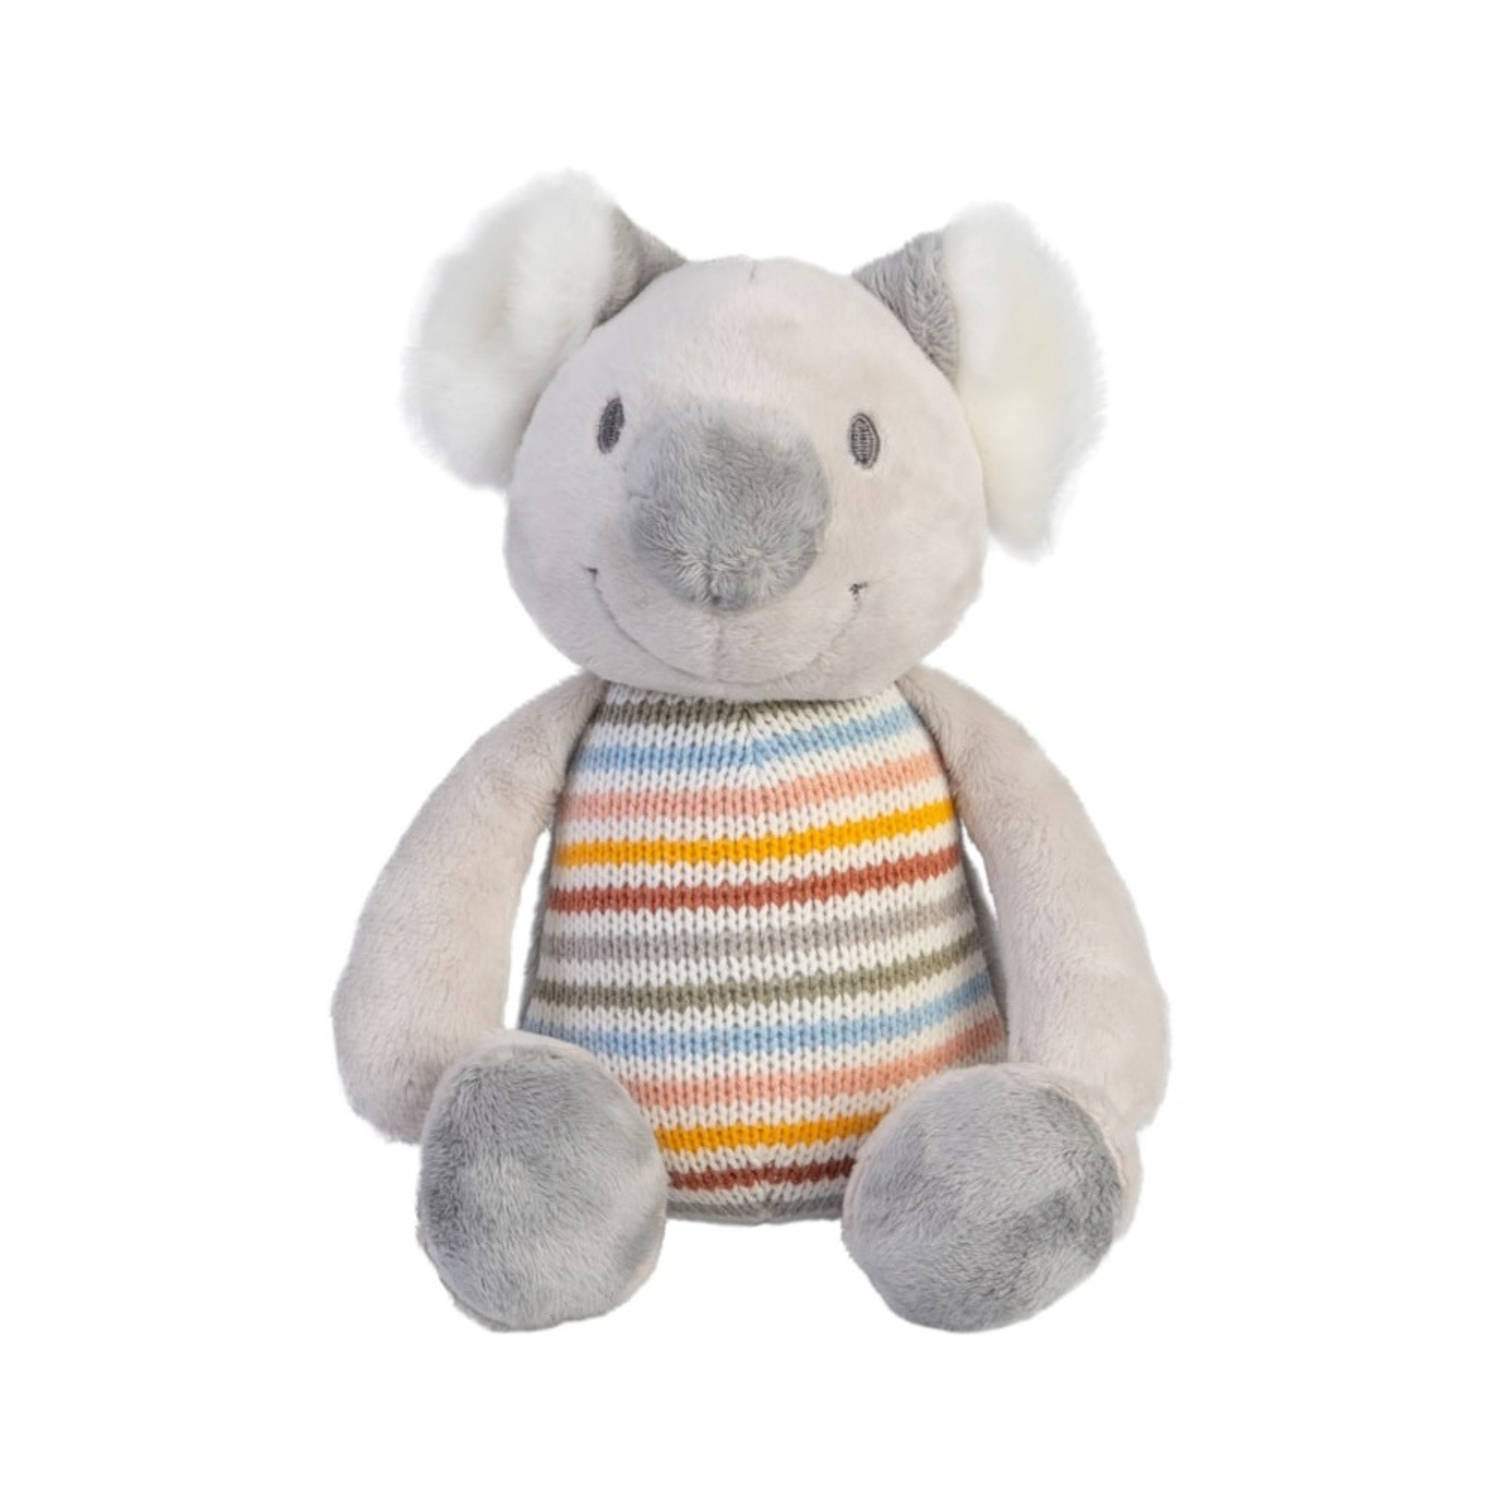 Happy Horse Koala McKensey Knuffel 26cm - Grijs/Multi - Baby knuffel